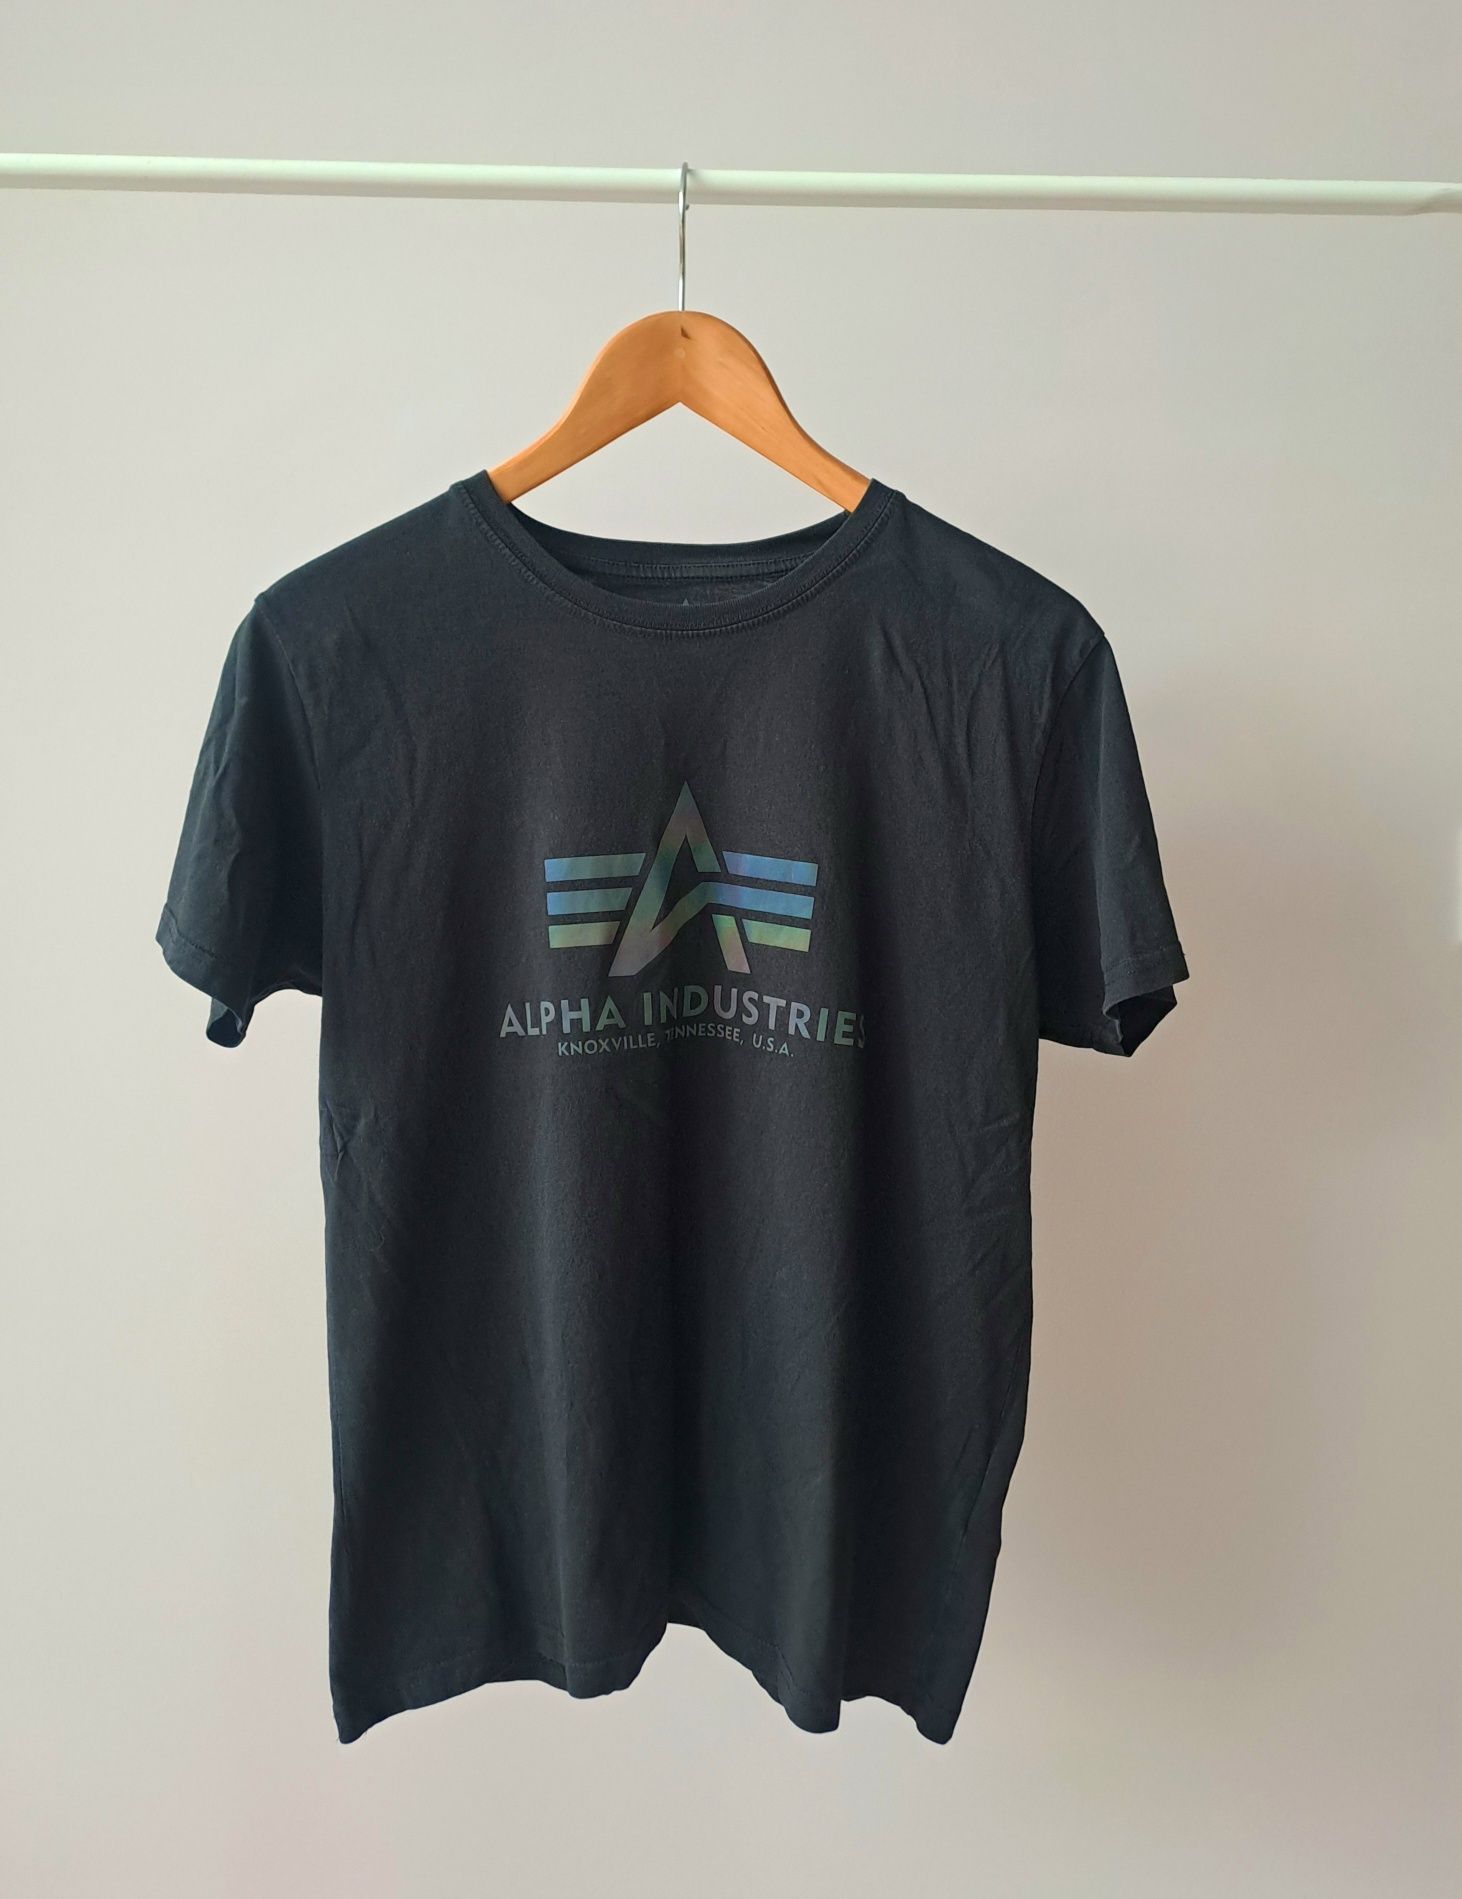 Damska/unisex koszulka t-shirt Alpha Industries multicolor r.M